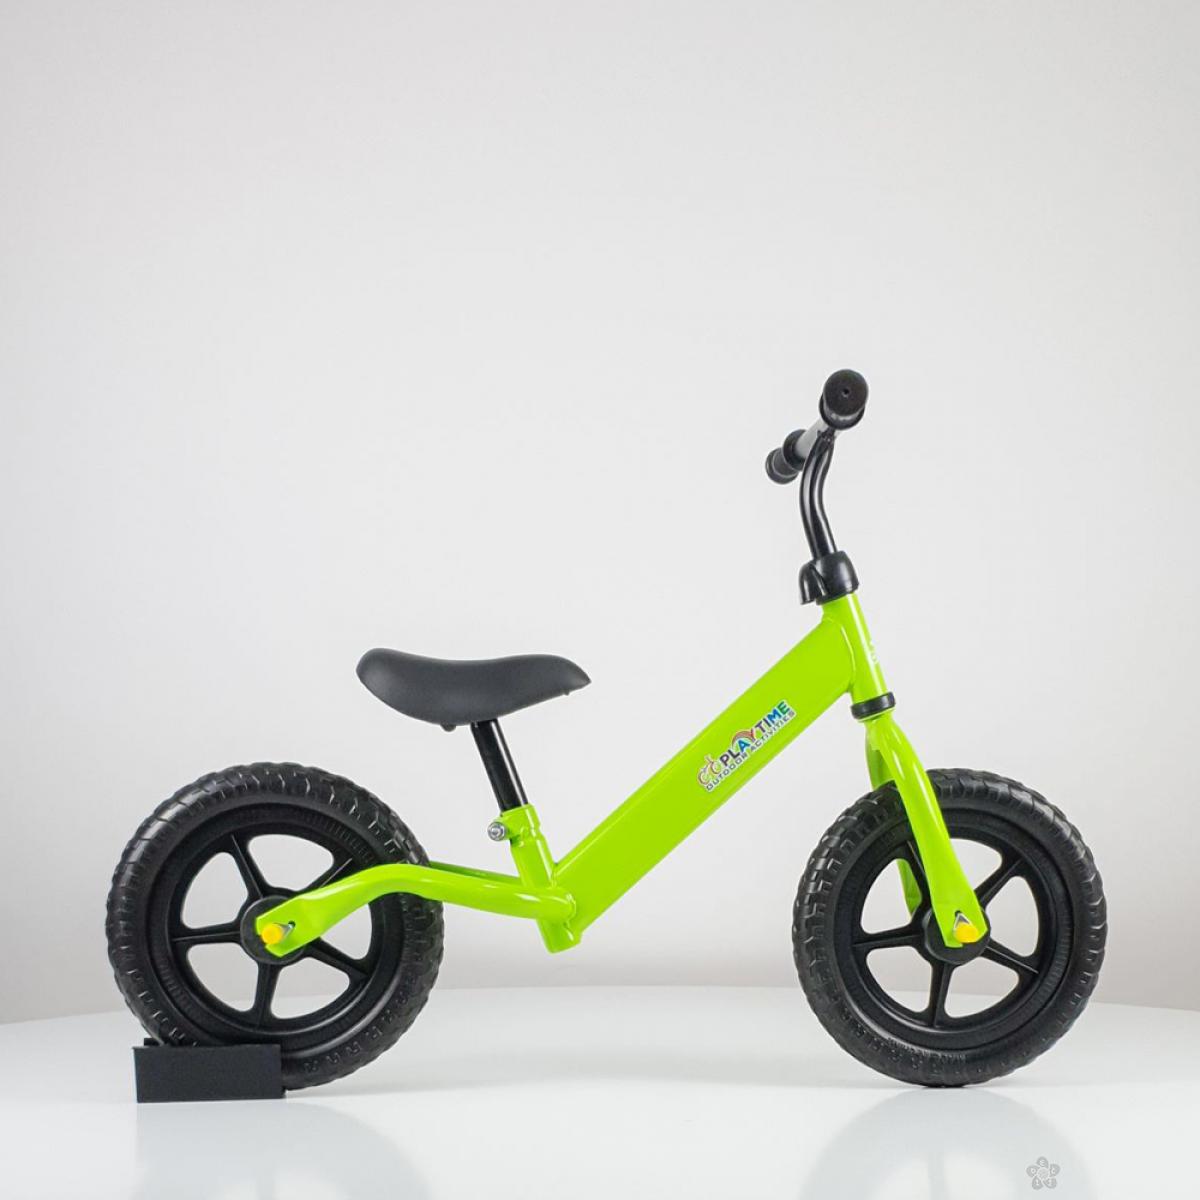 Biciklo za decu Balance bike, model 750 zelena 